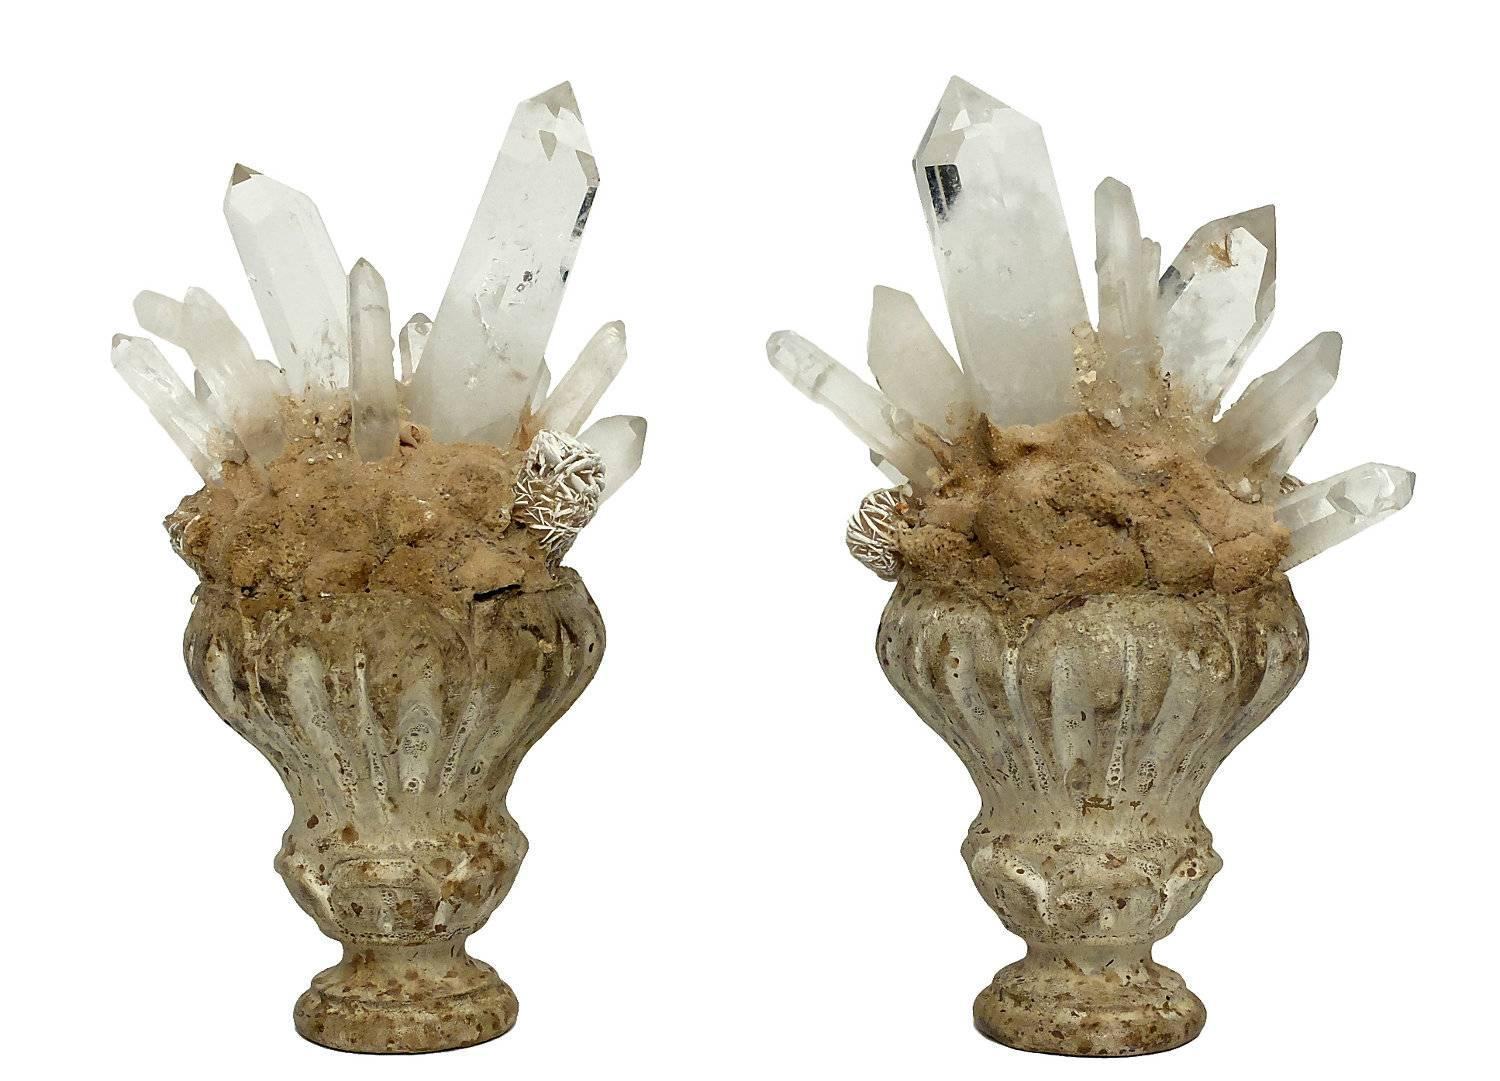 Late 19th Century Wunderkammer Naturalia Mineral Specimen, Desert Rose and Rock Crystal